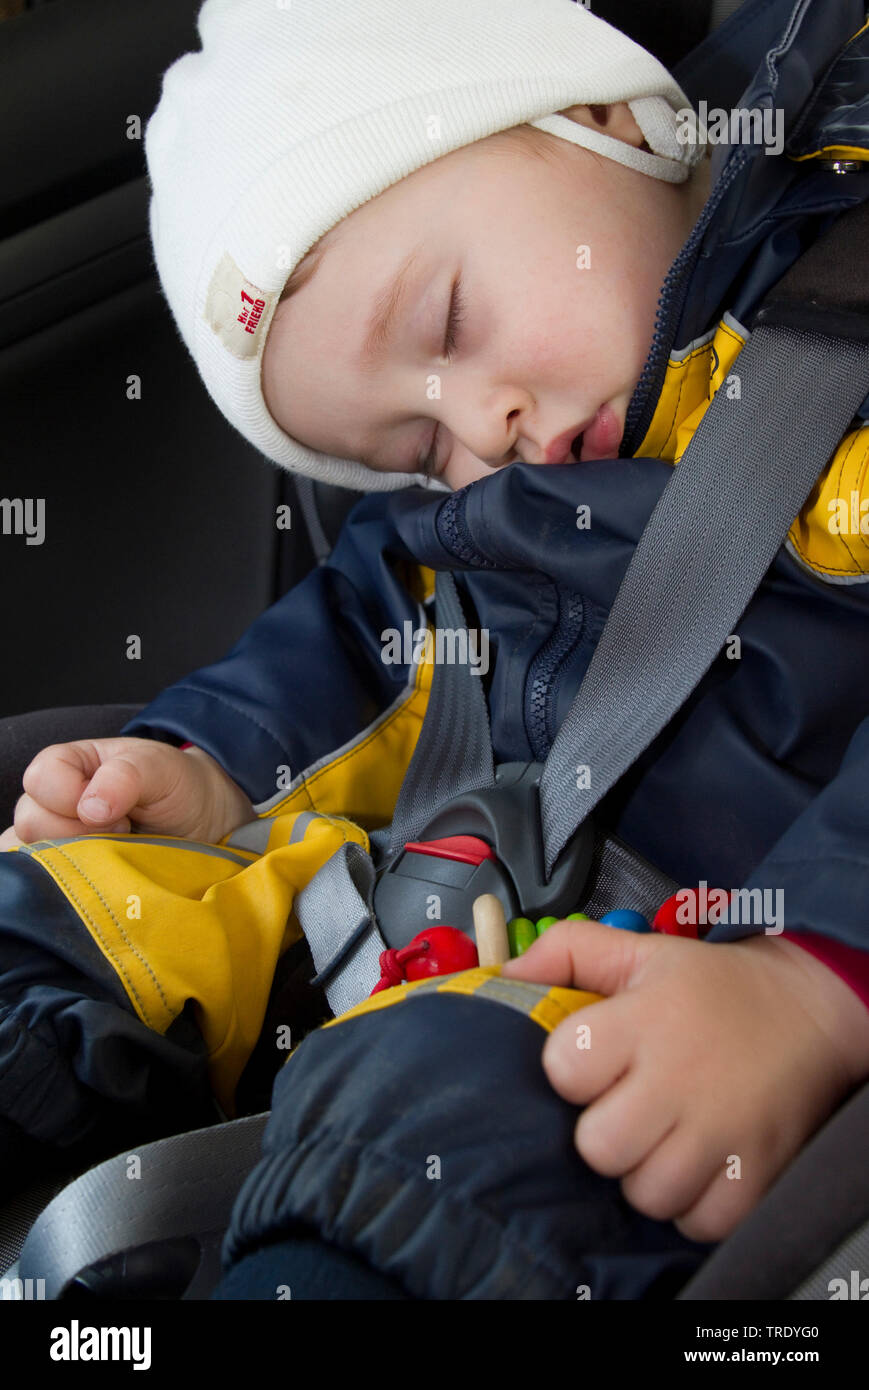 Retrato de un joven durmiendo en su asiento de coche Foto de stock